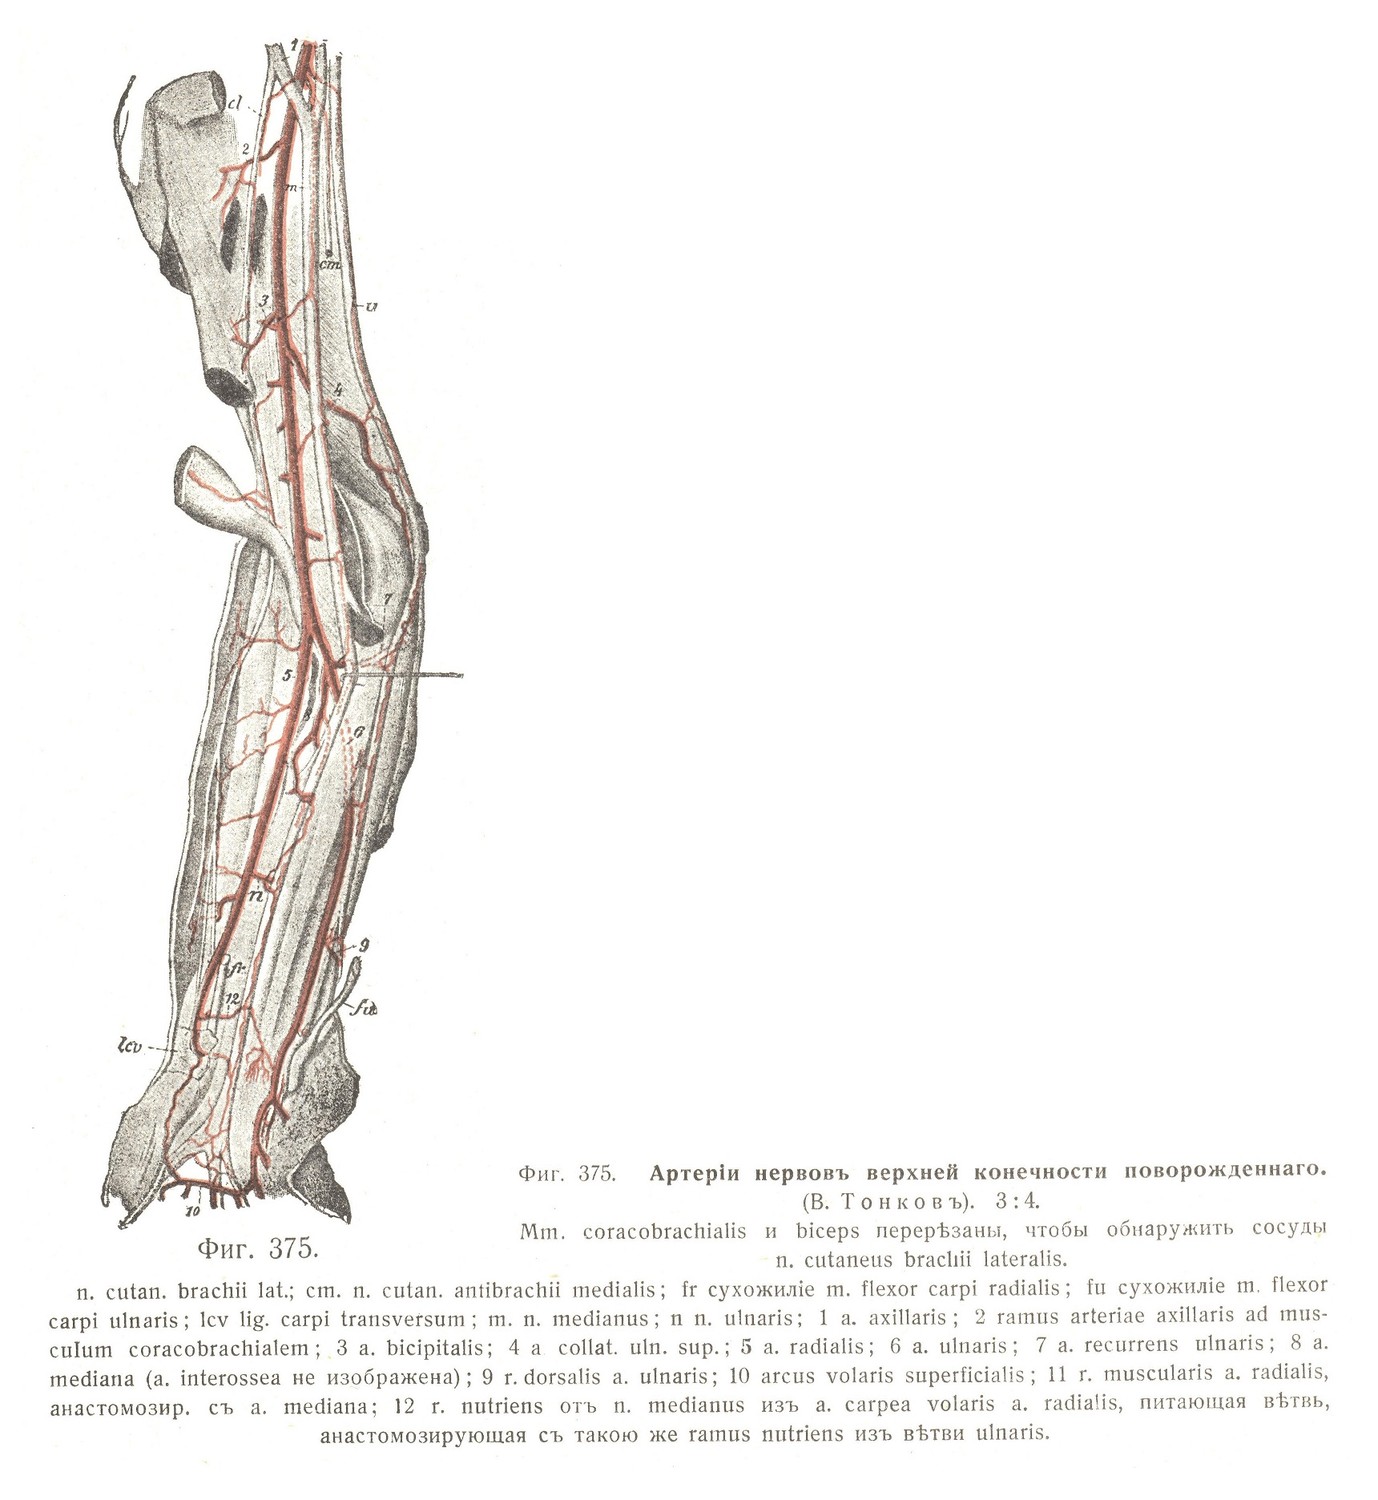 Артерии нервов верхней конечности новорождённого.